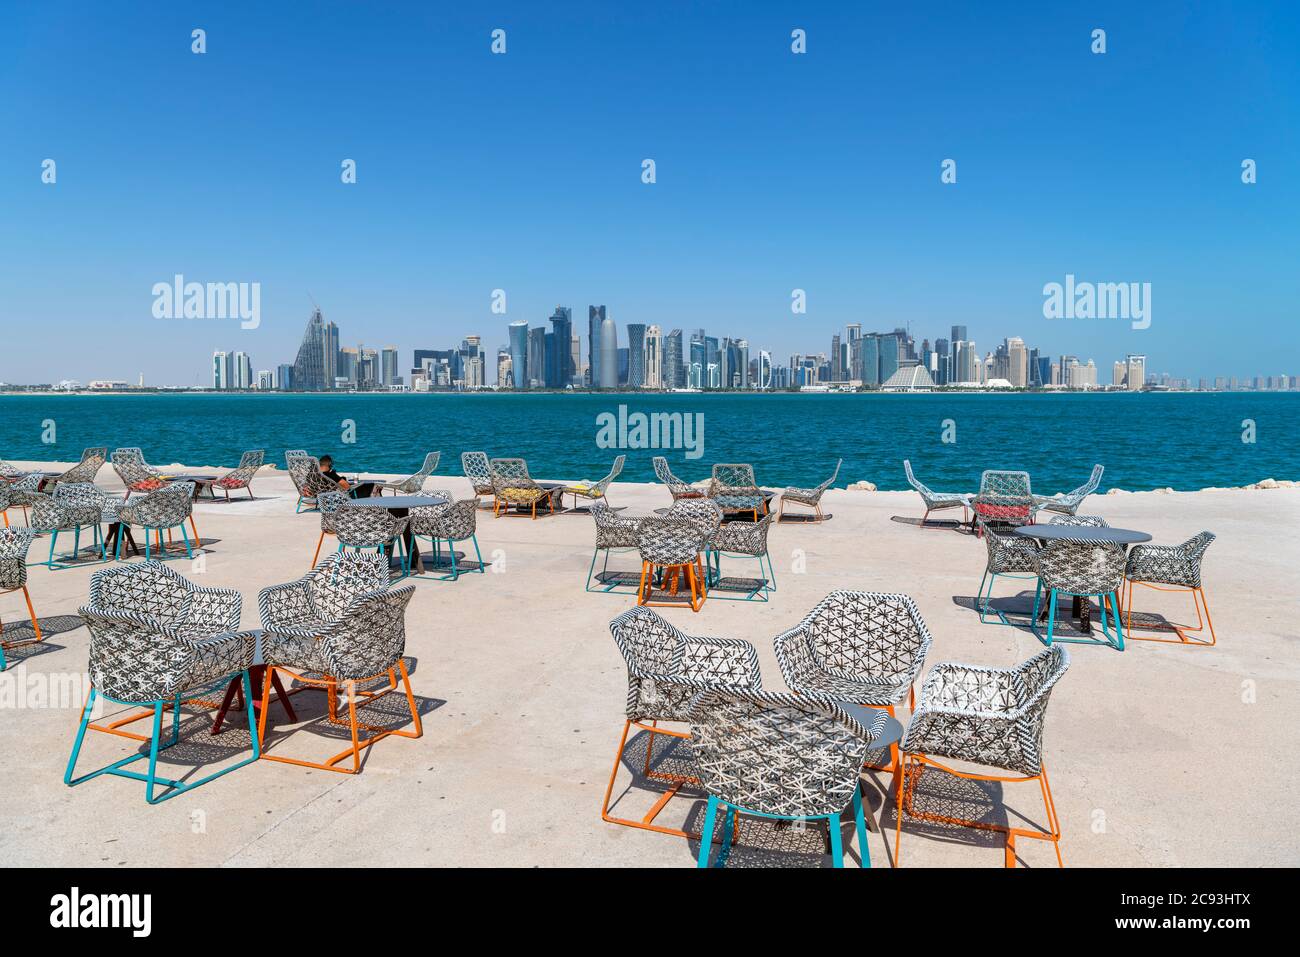 Il mia Park Cafe nel mia Park con lo skyline del West Bay Central Business District dietro, Doha, Qatar, Medio Oriente Foto Stock